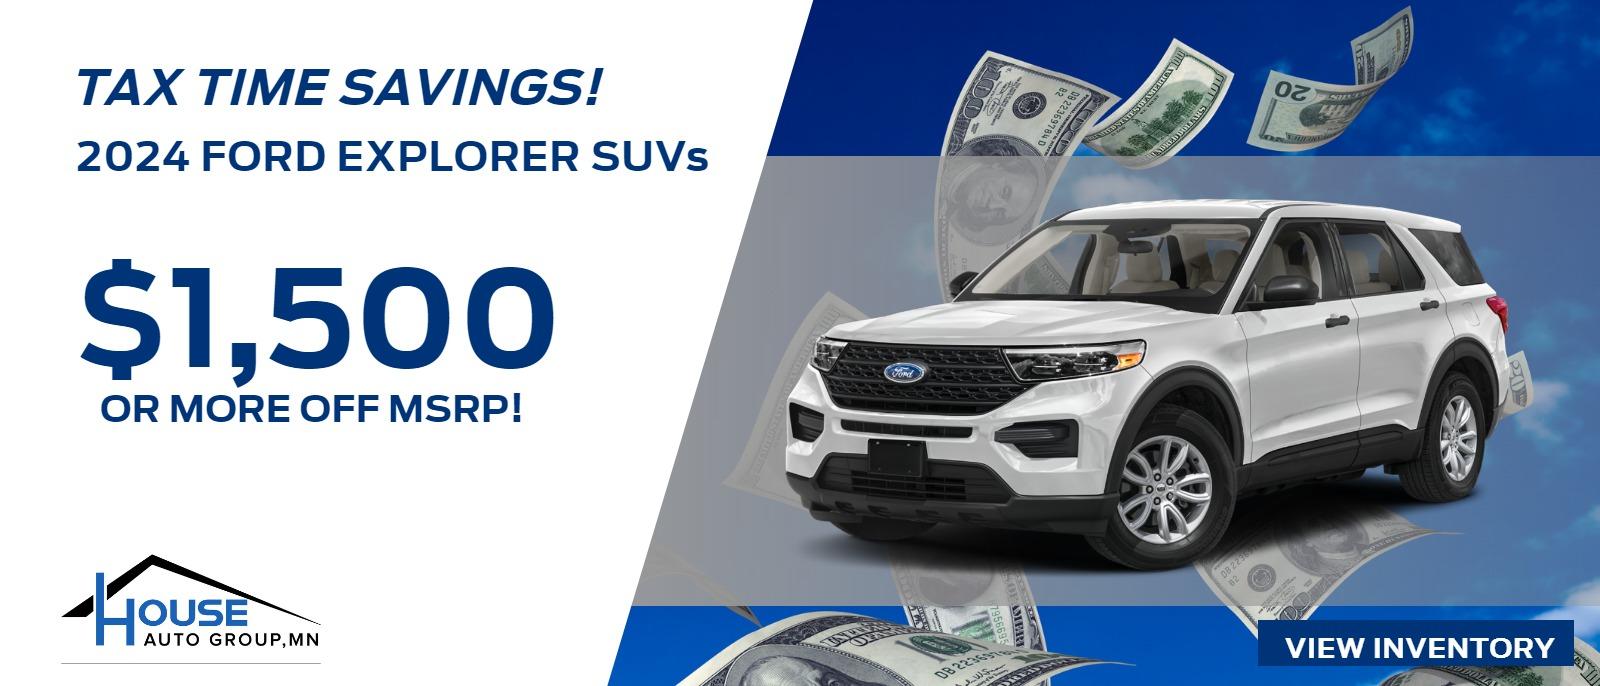 2024 Ford Explorer SUVs -- $1,500 Or More Off MSRP!